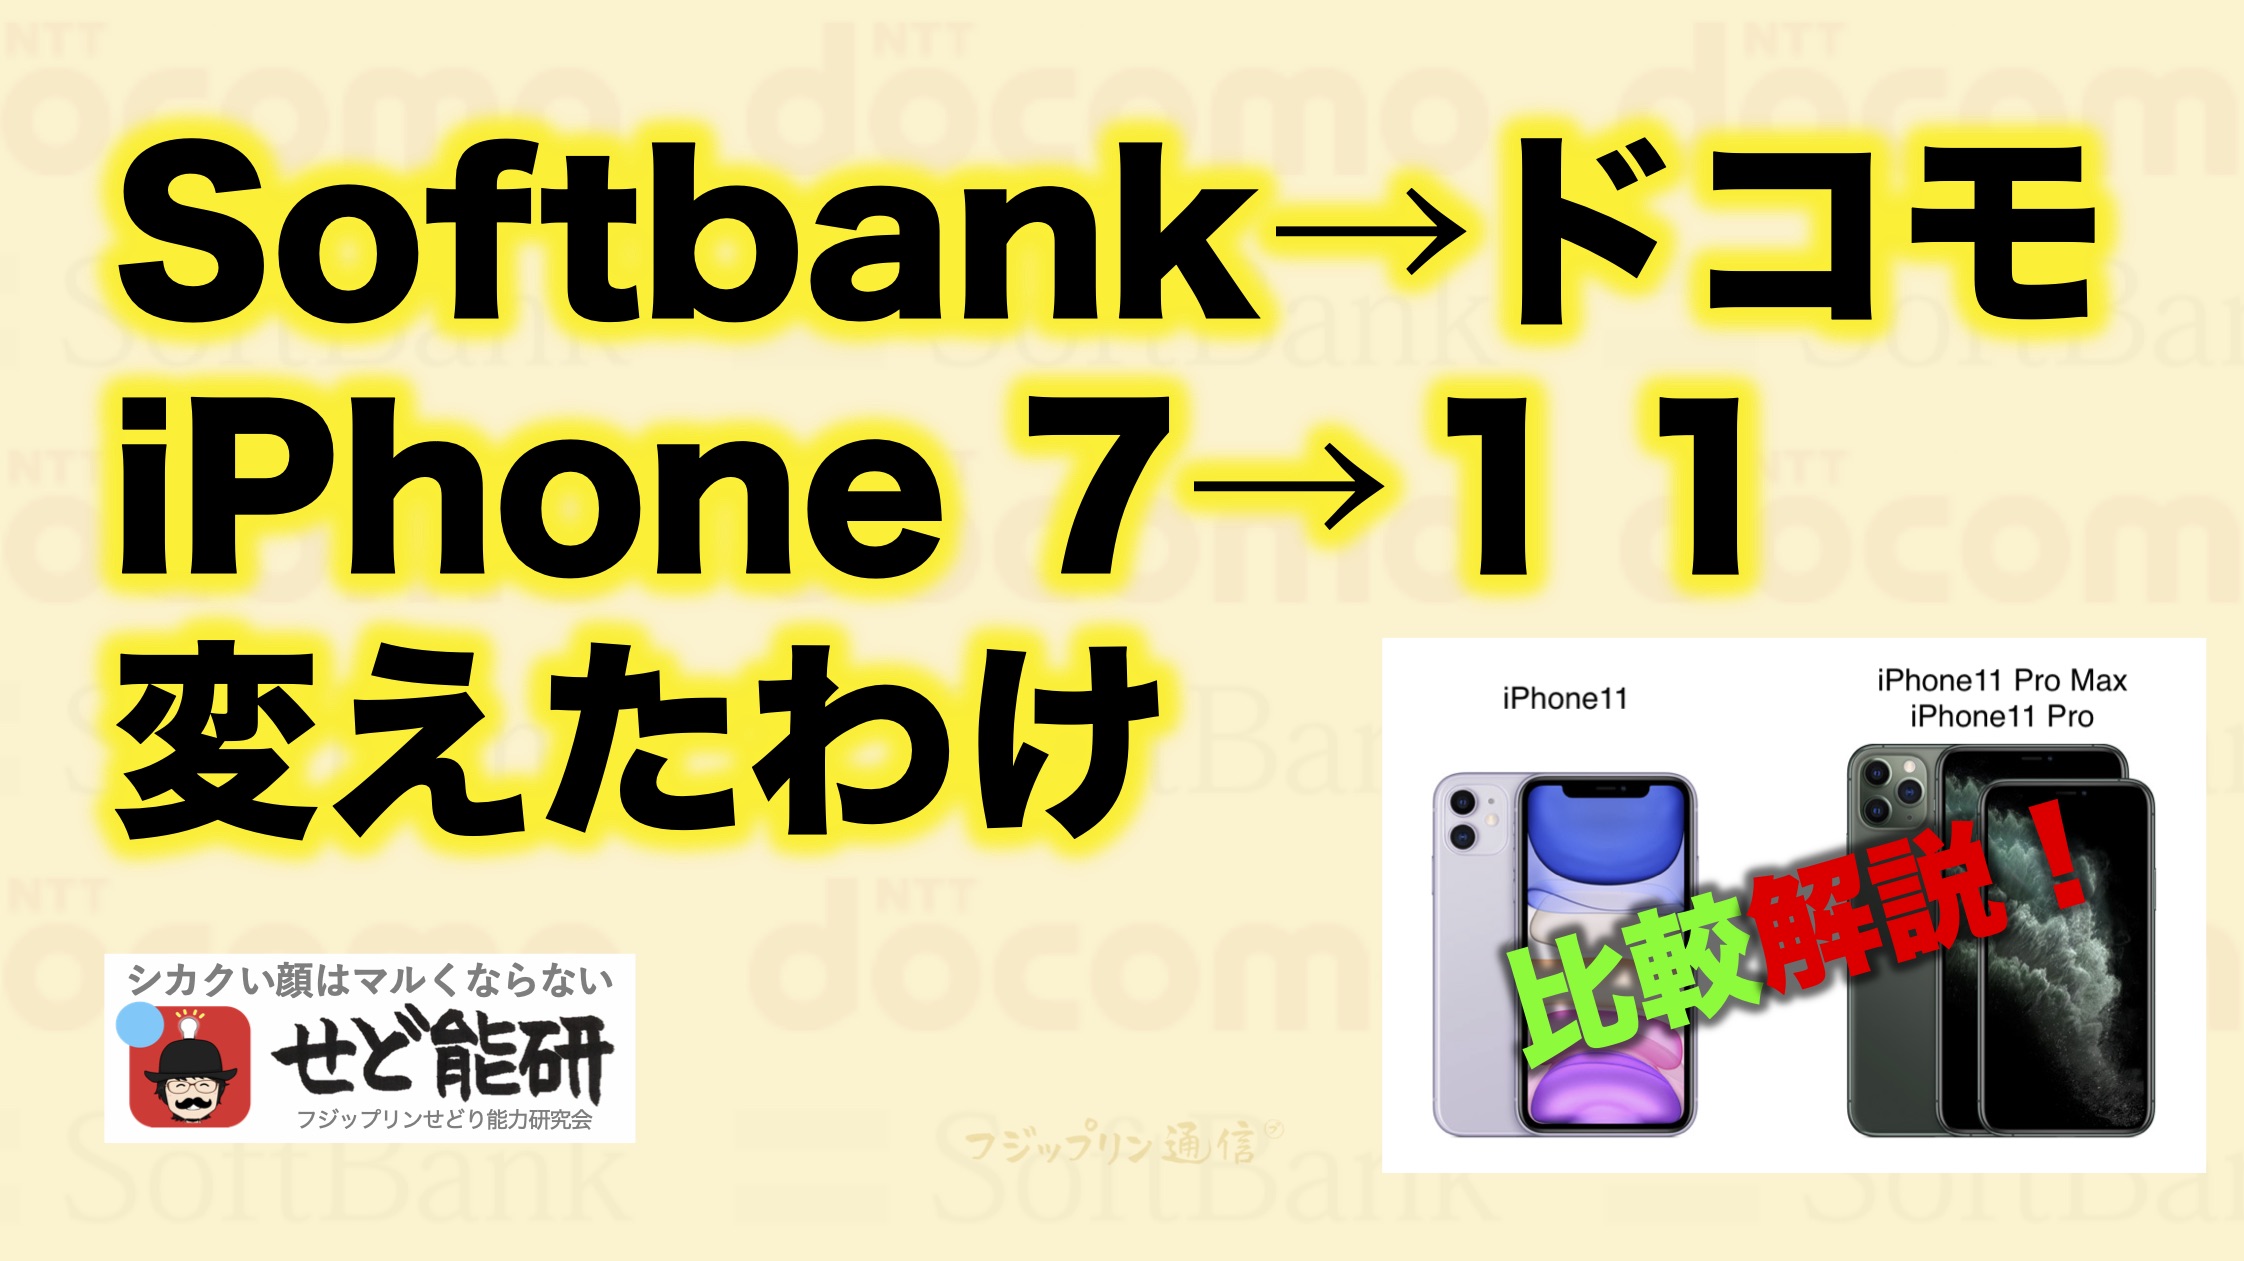 Softbank iPhone7が急に故障【その２】ドコモiPhone11に機種変更した理由。